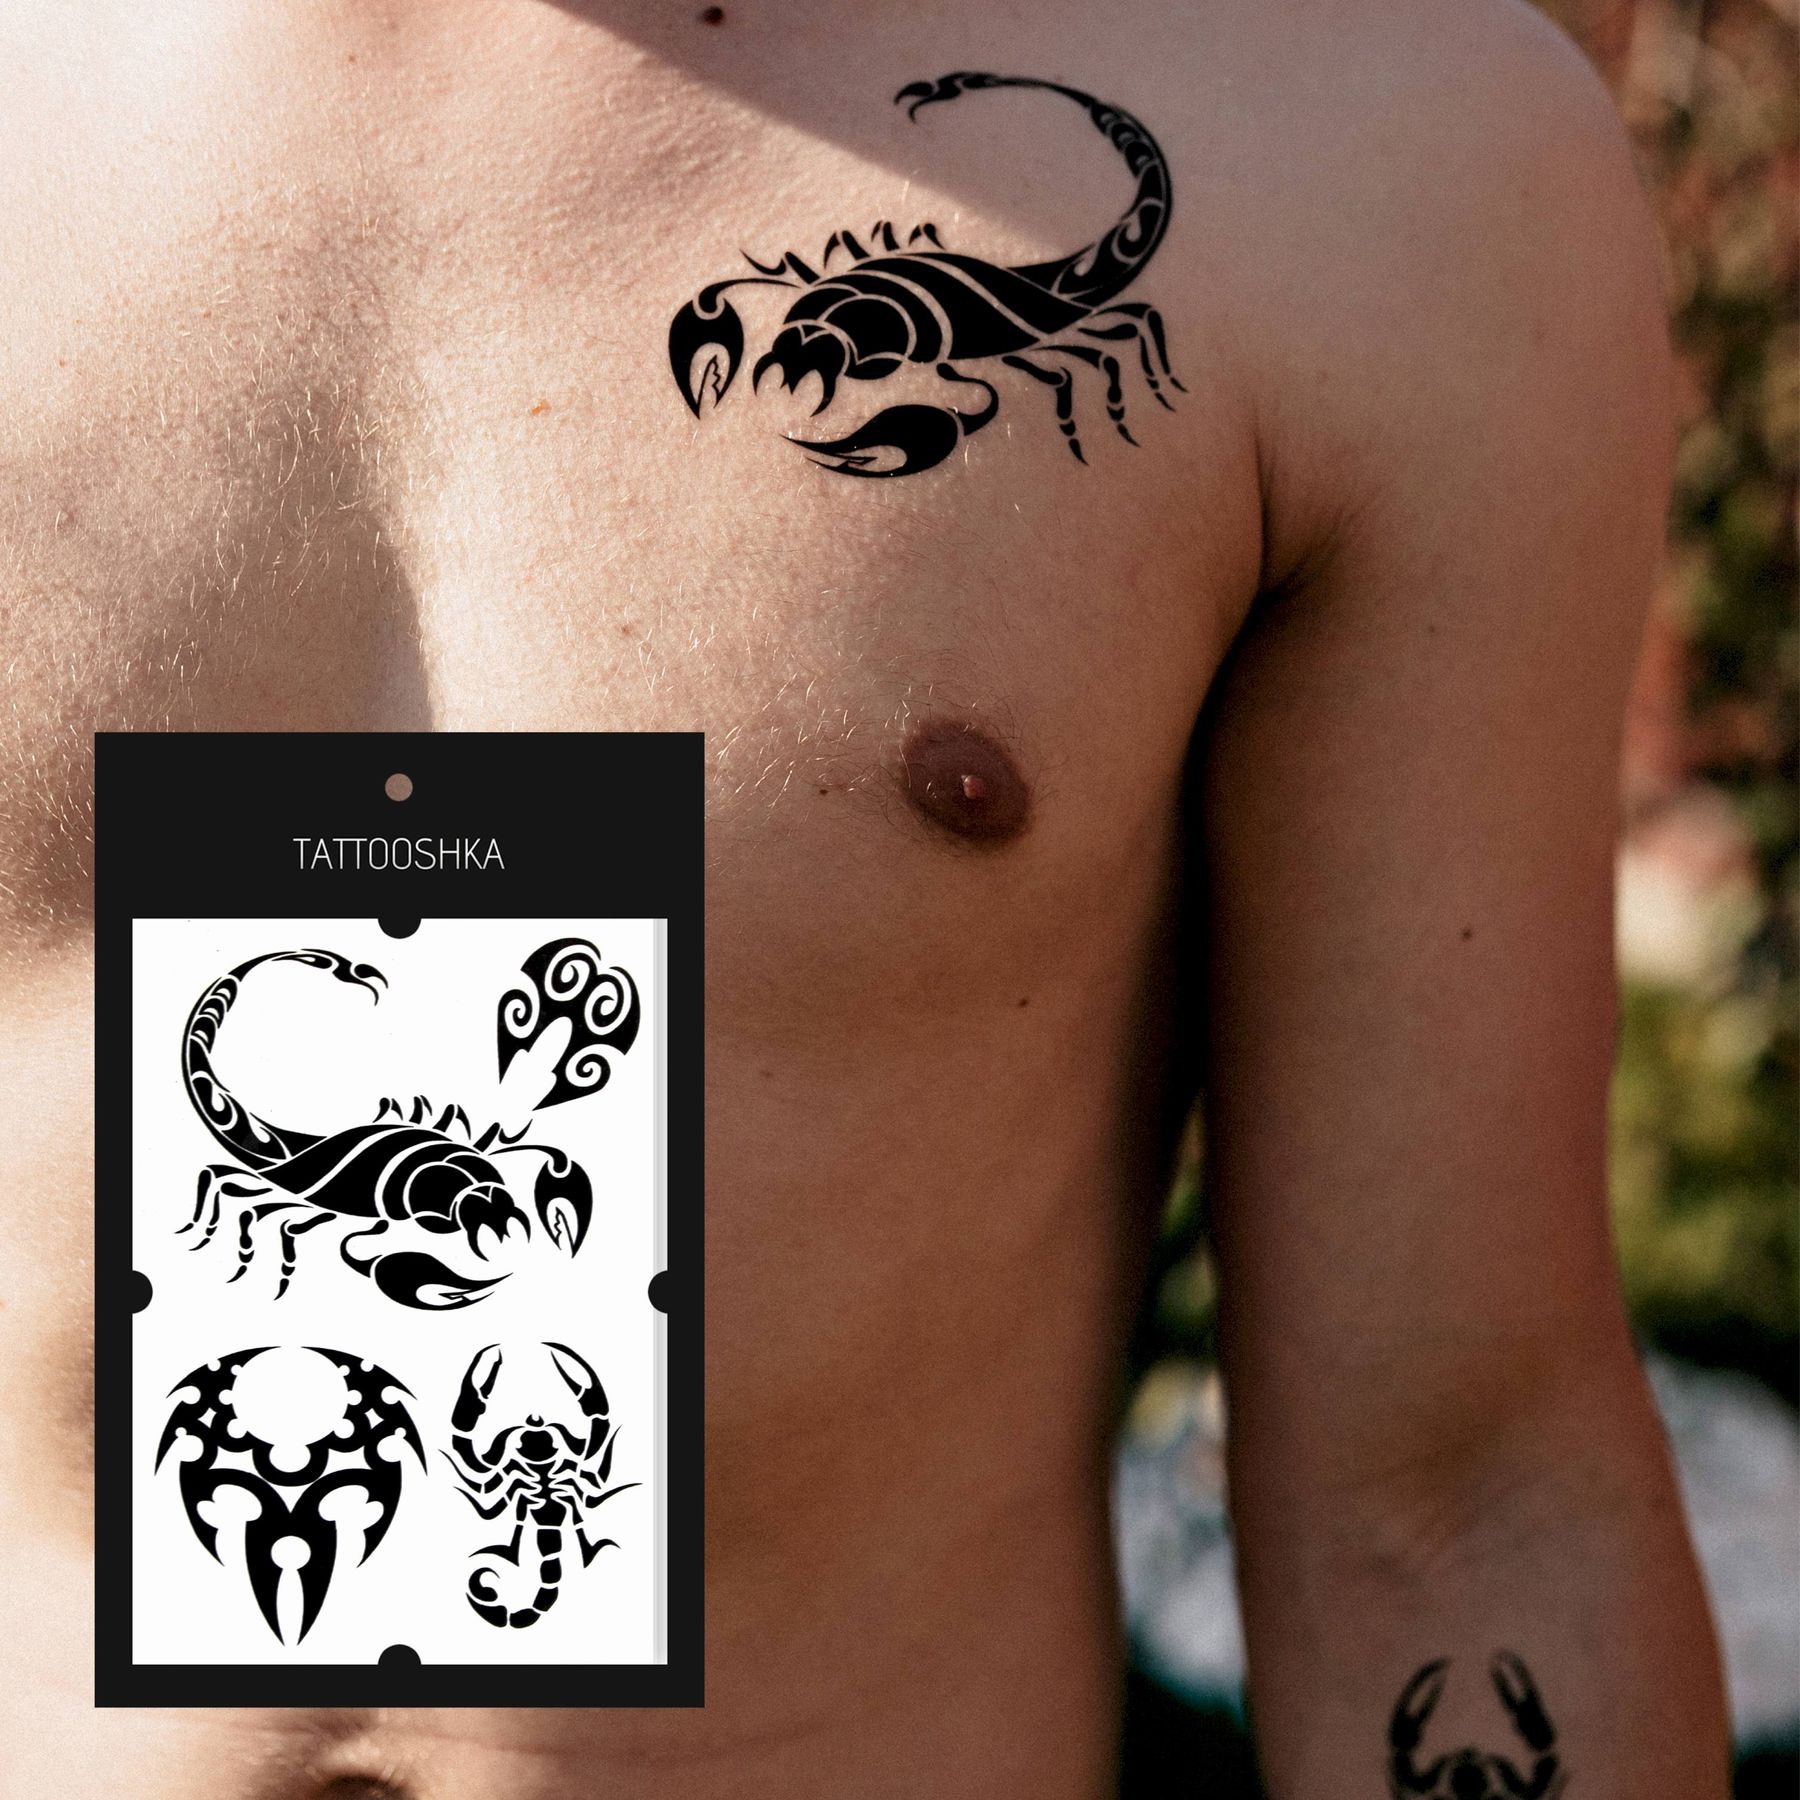 Татуировки мужские: скорпион - значение и интересные идеи - вороковский.рф